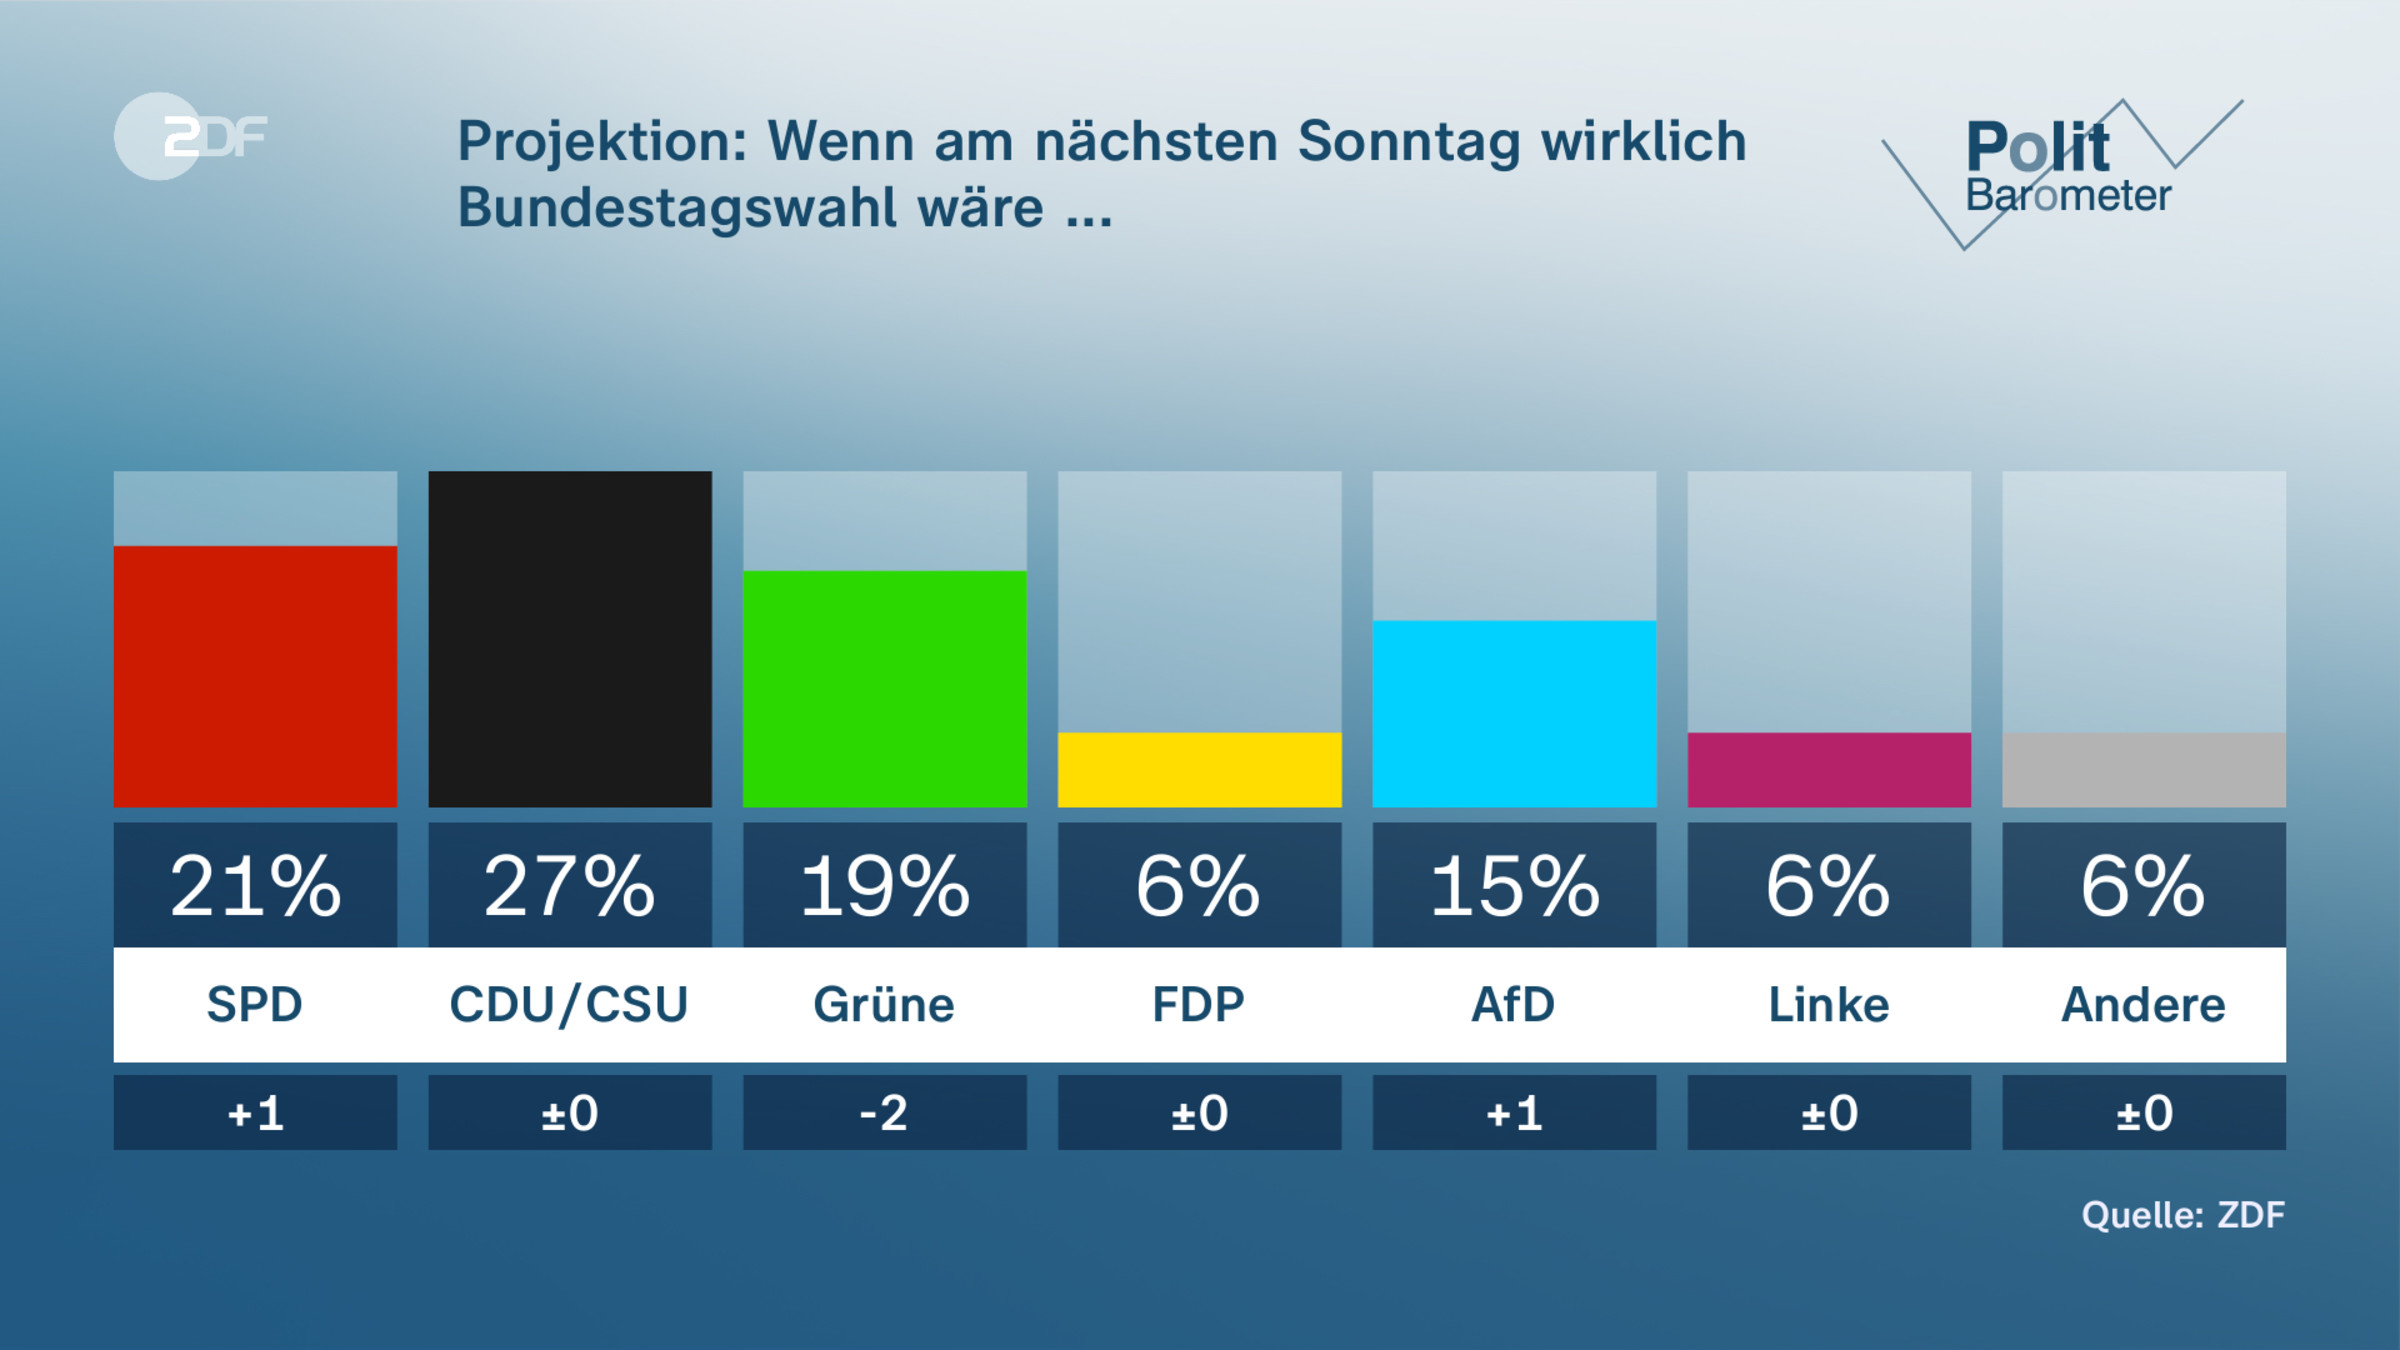 Projektion: Wenn am nächsten Sonntag wirklich Bundestagswahl wäre ...